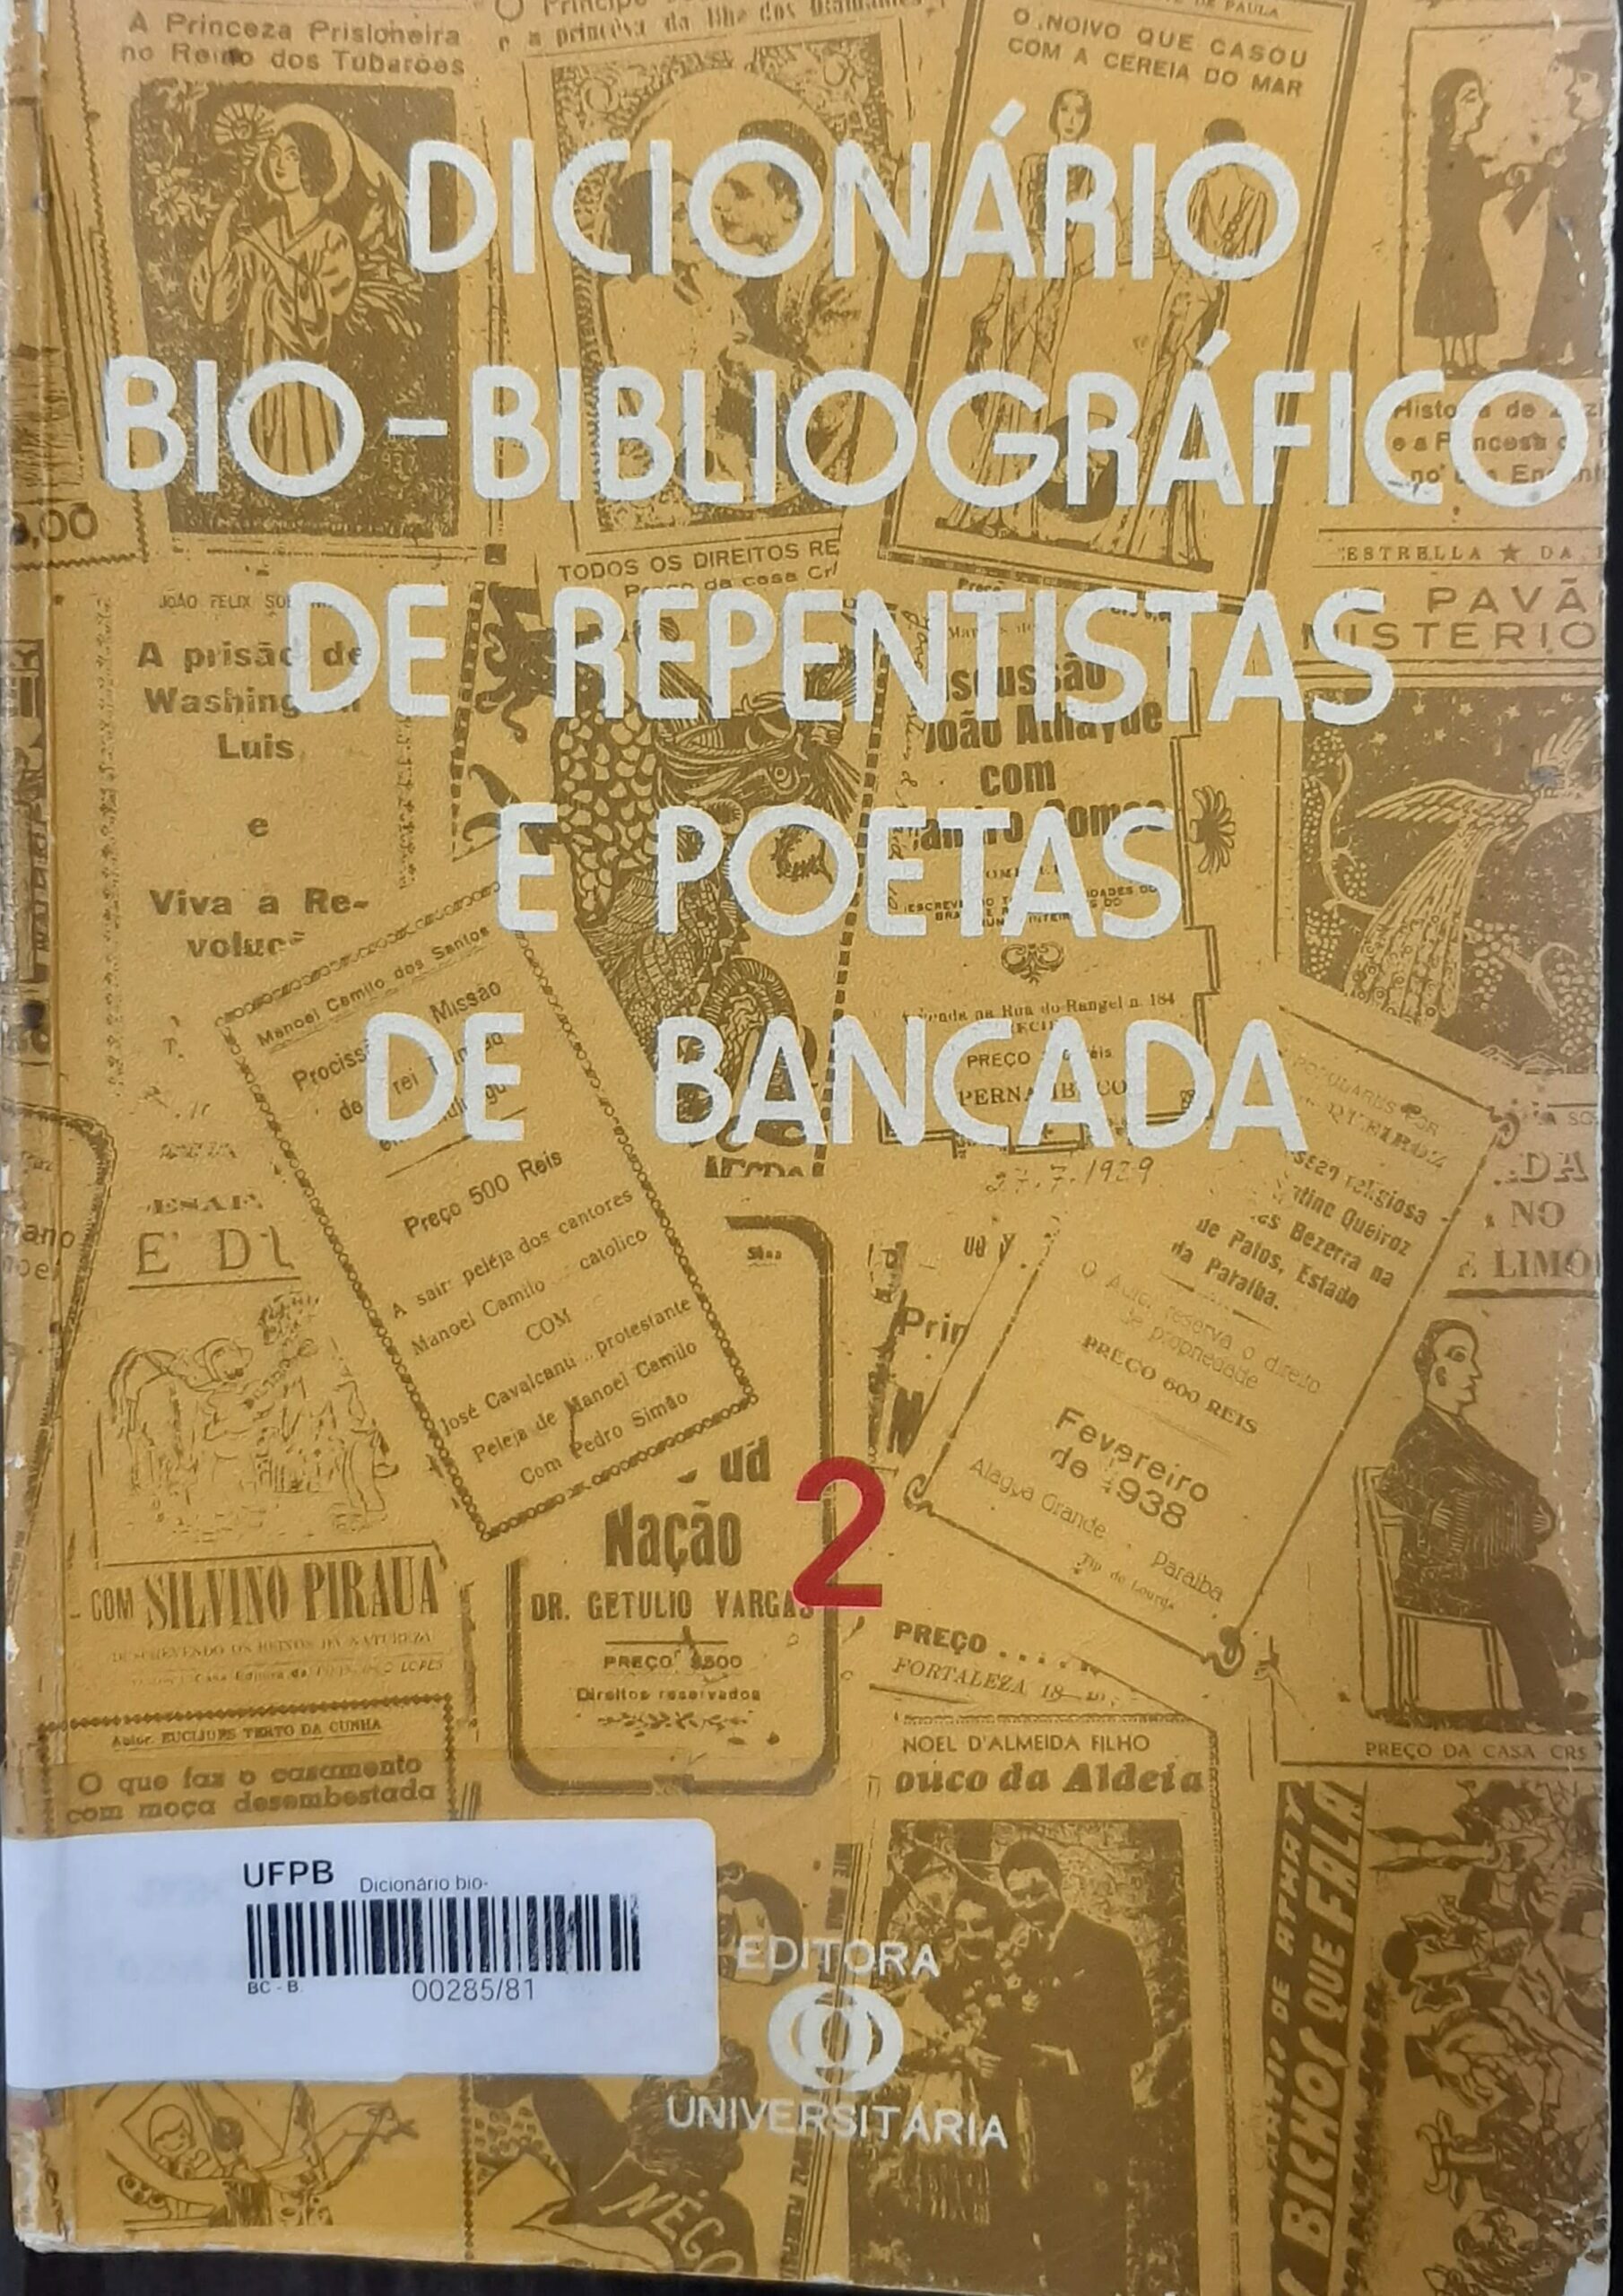 capa do livro dicionário bio-biográfico2